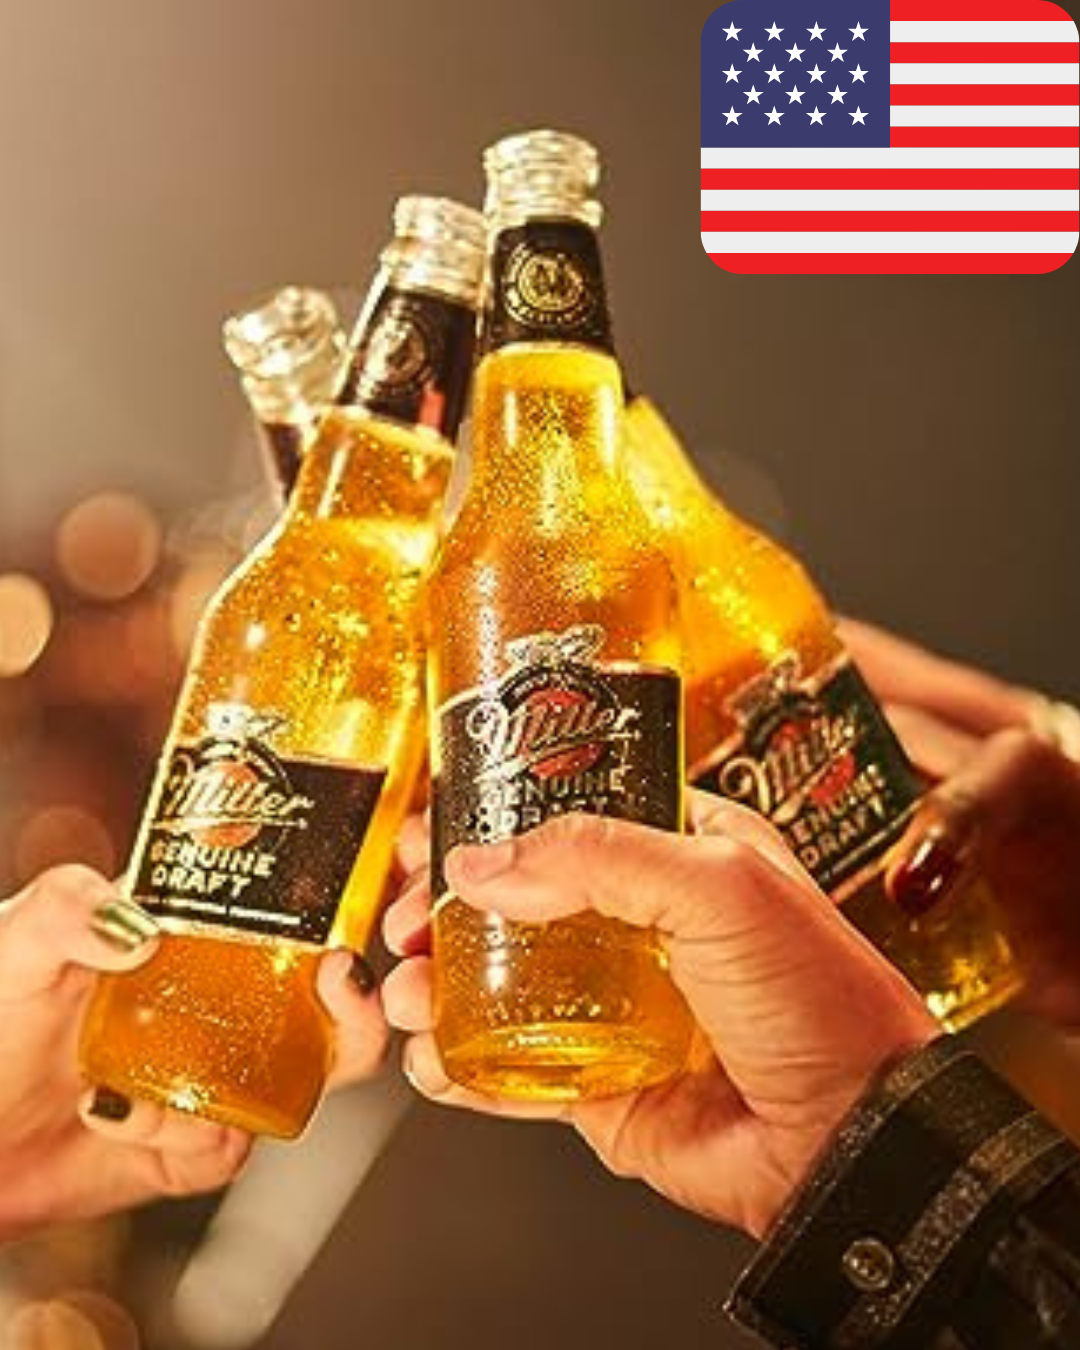 Miller, una de las marcas de cerveza más consumidas en Estados Unidos